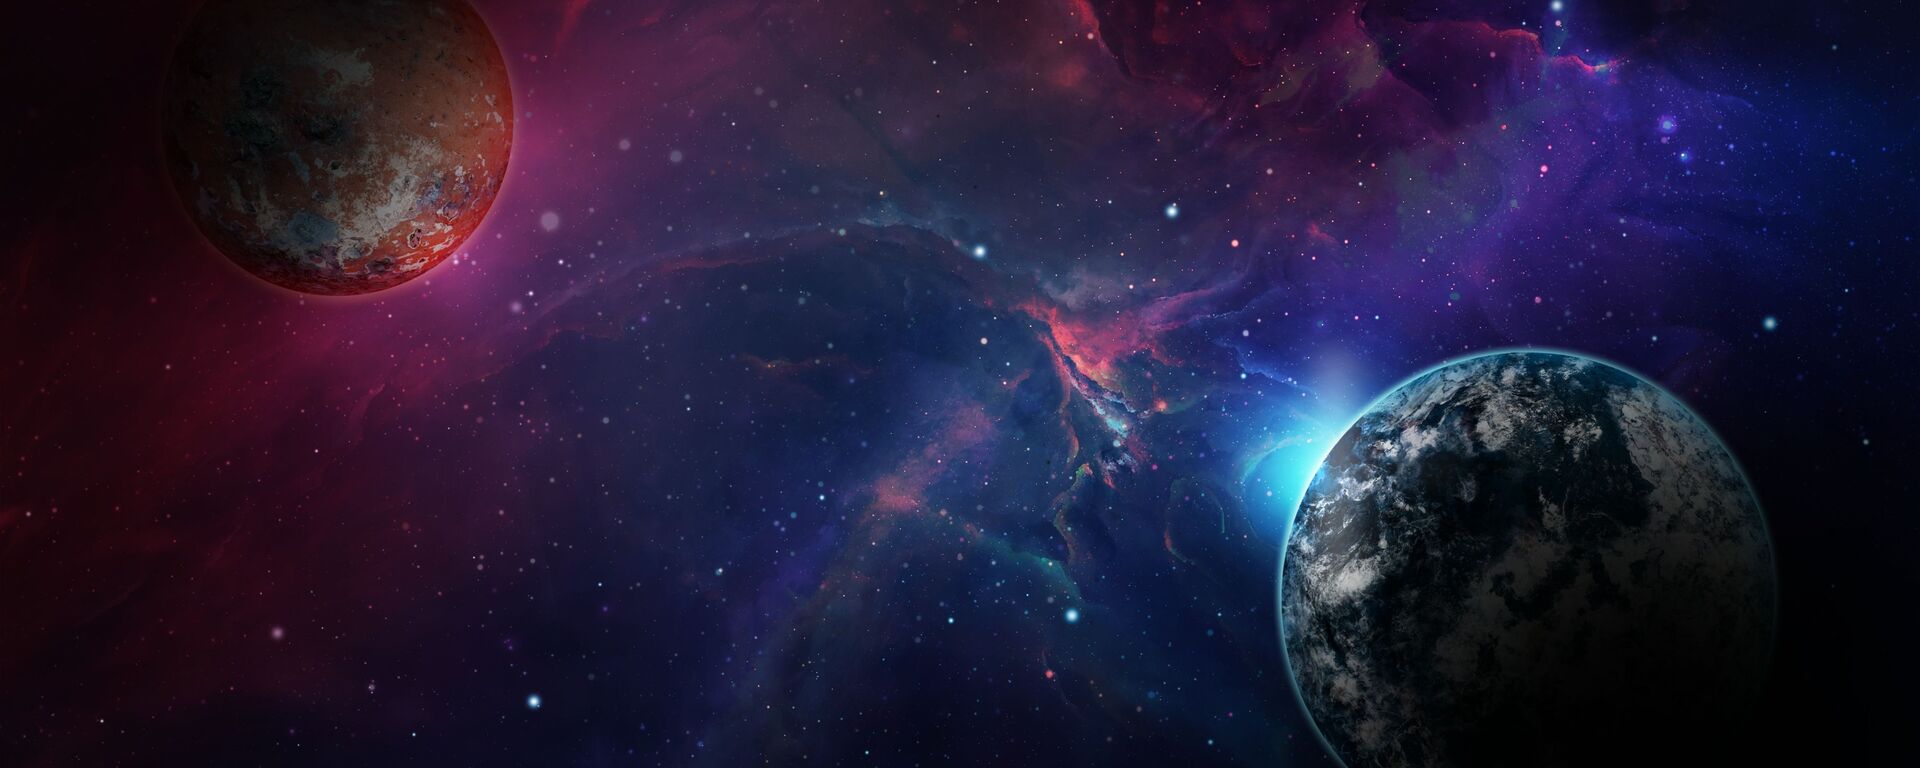 صورة خيالية لكوكب الأرض بجانب كوكب آخر  - سبوتنيك عربي, 1920, 11.11.2021